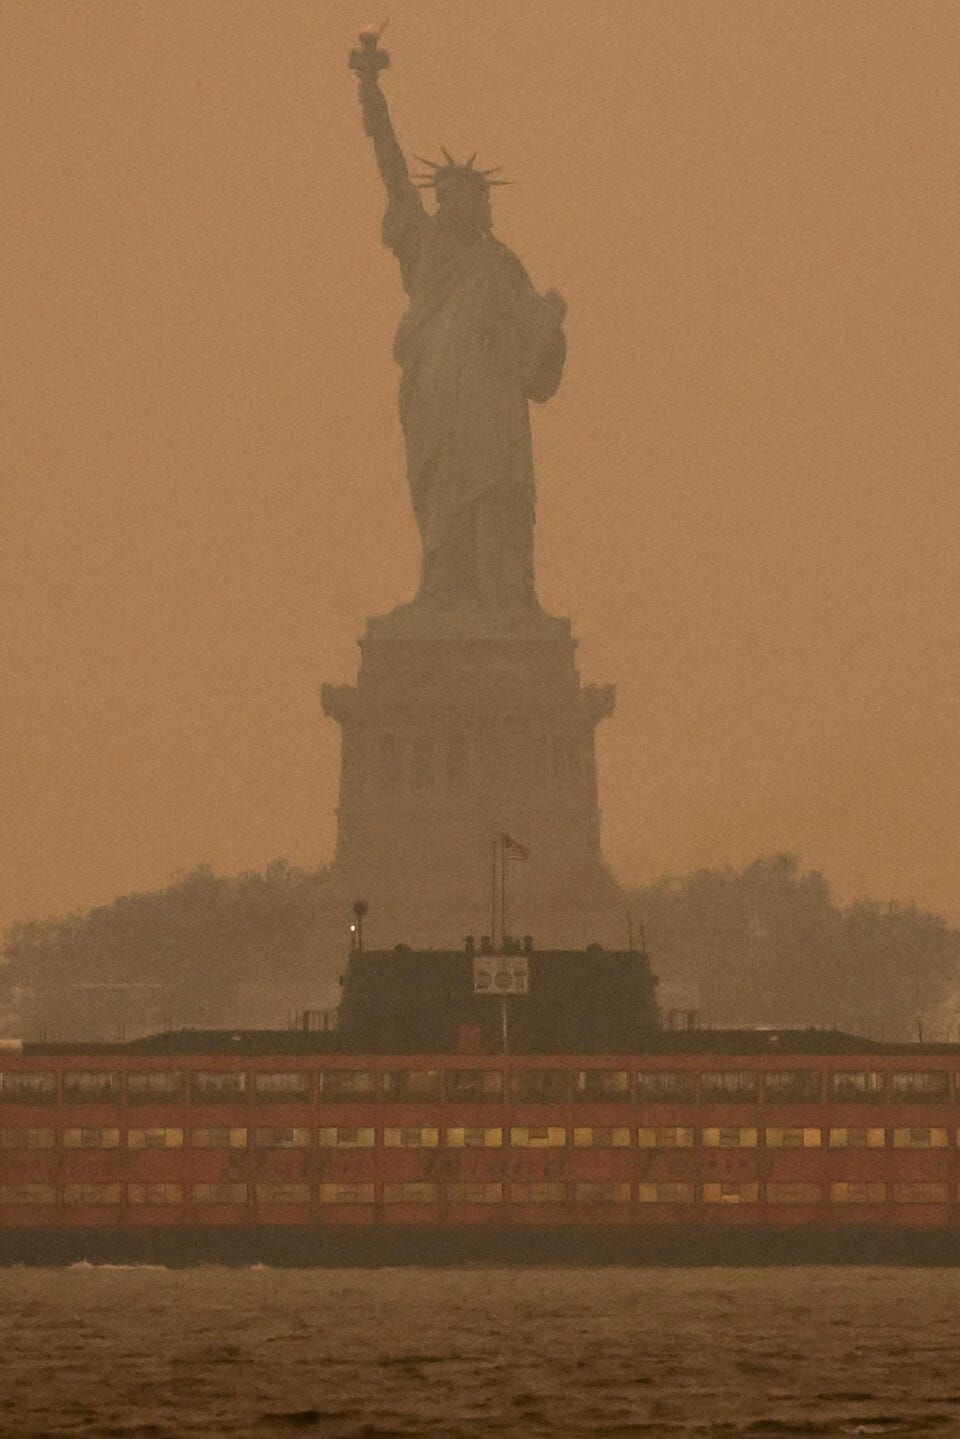 A hazy Lady Liberty